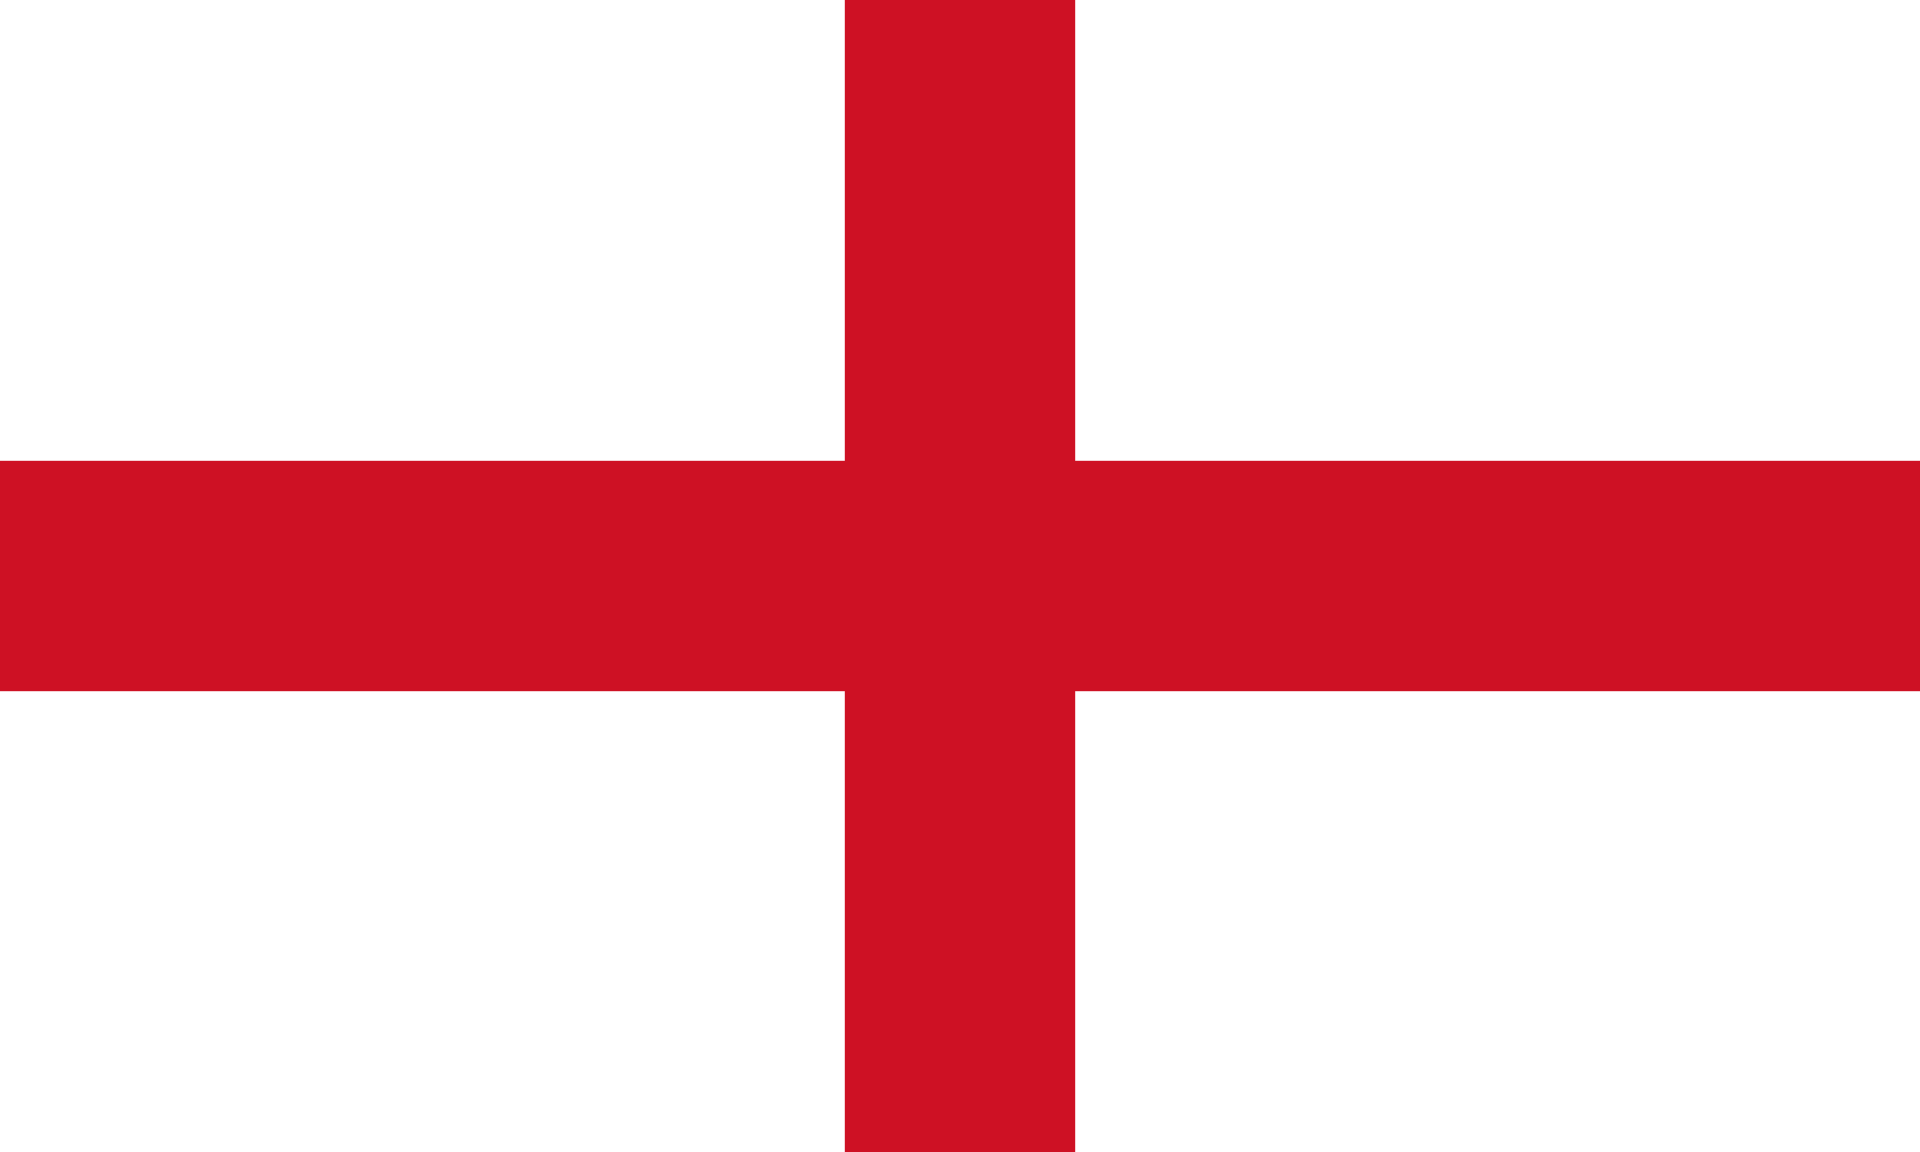 England/UK flag